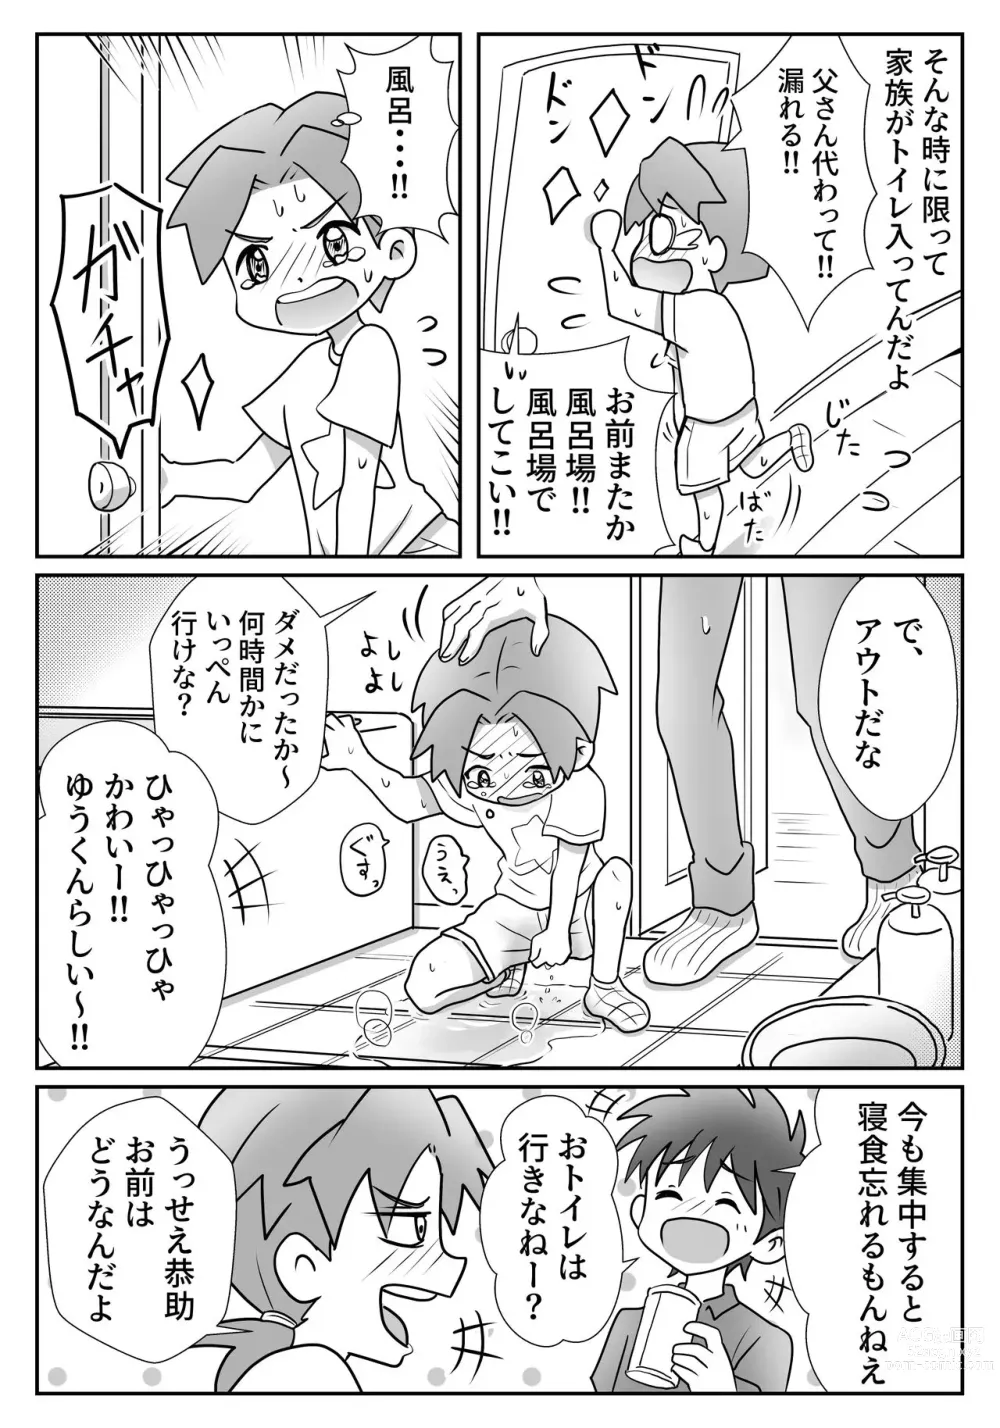 Page 5 of doujinshi Yuu-kun to Kyousuke